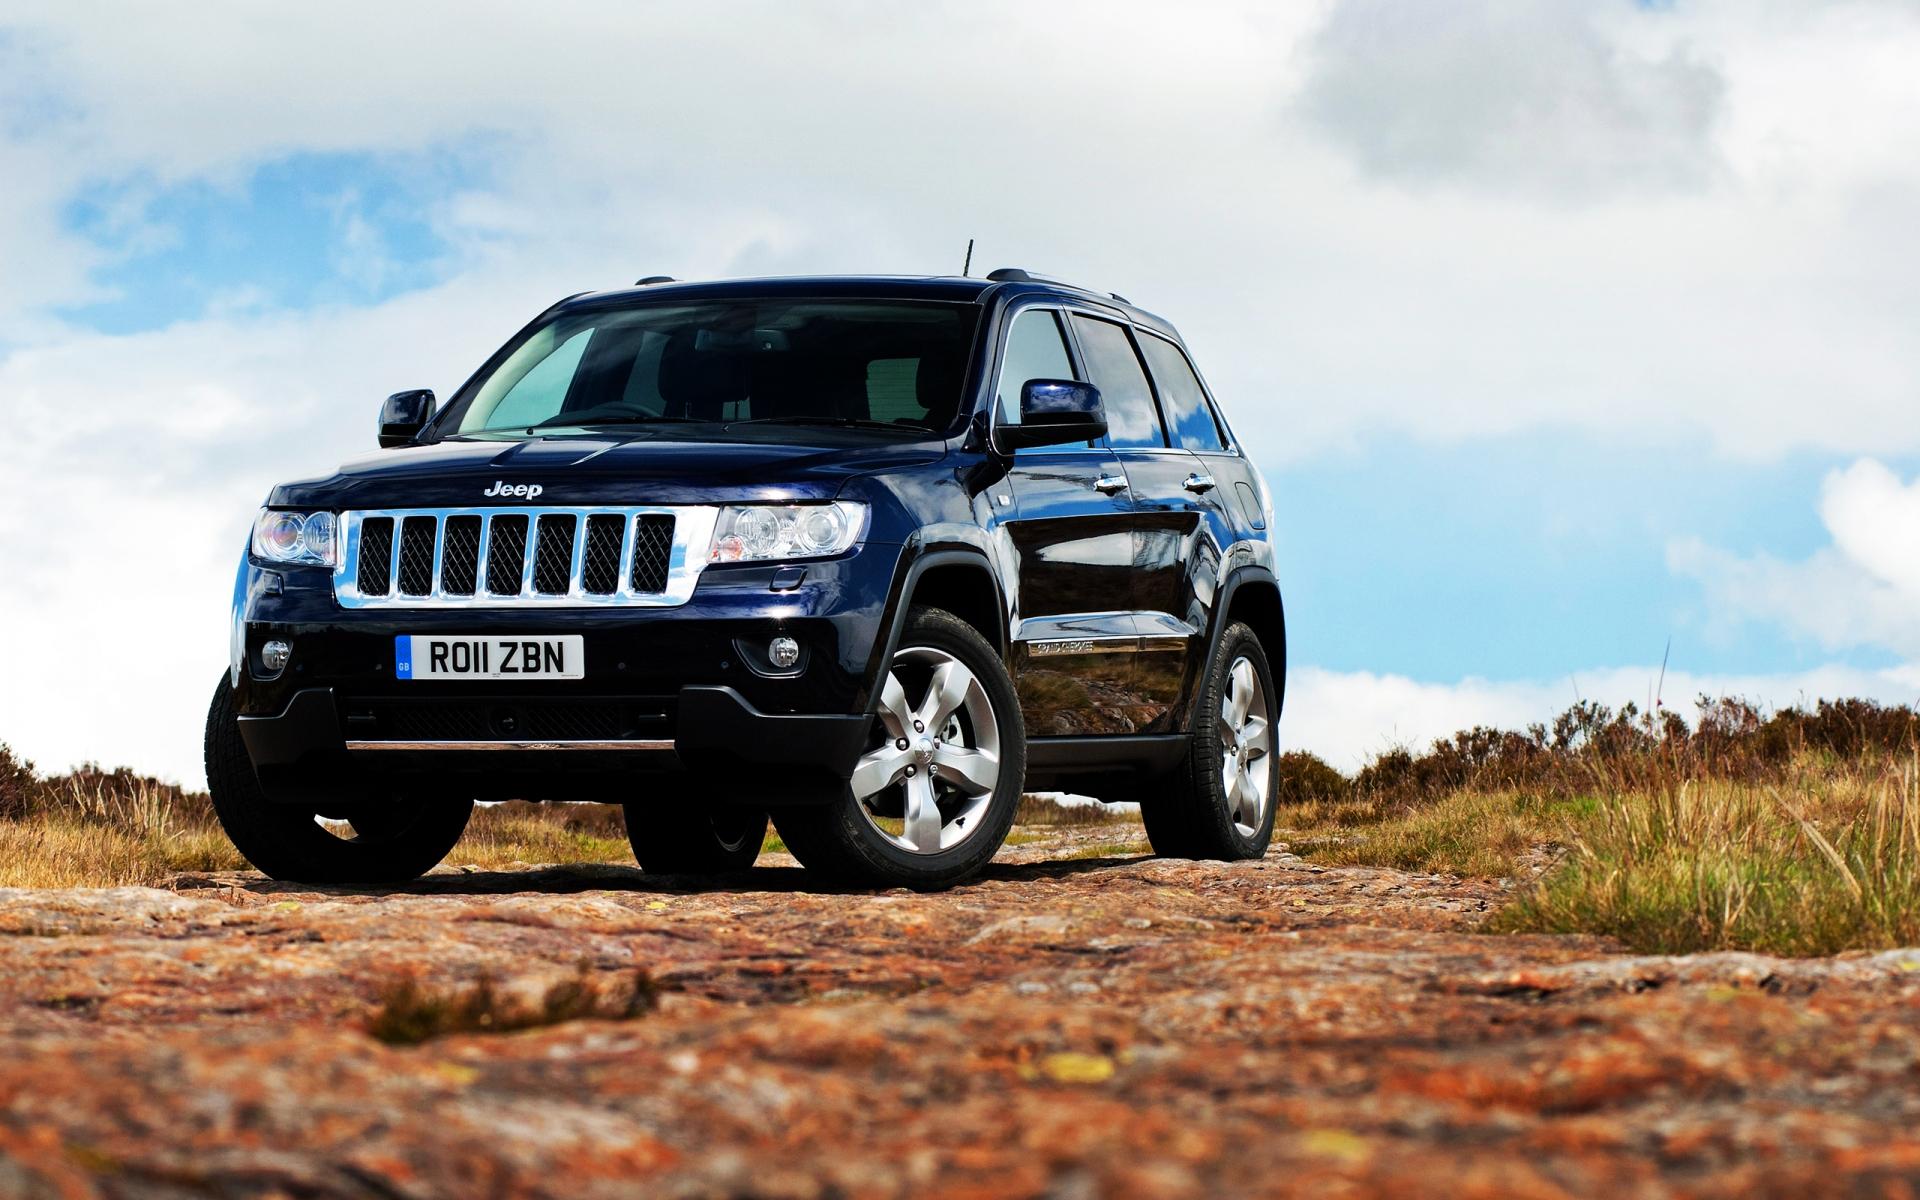 jeep fonds d'écran hd 1080p,véhicule terrestre,véhicule,voiture,rallye de régularité,véhicule utilitaire sport compact